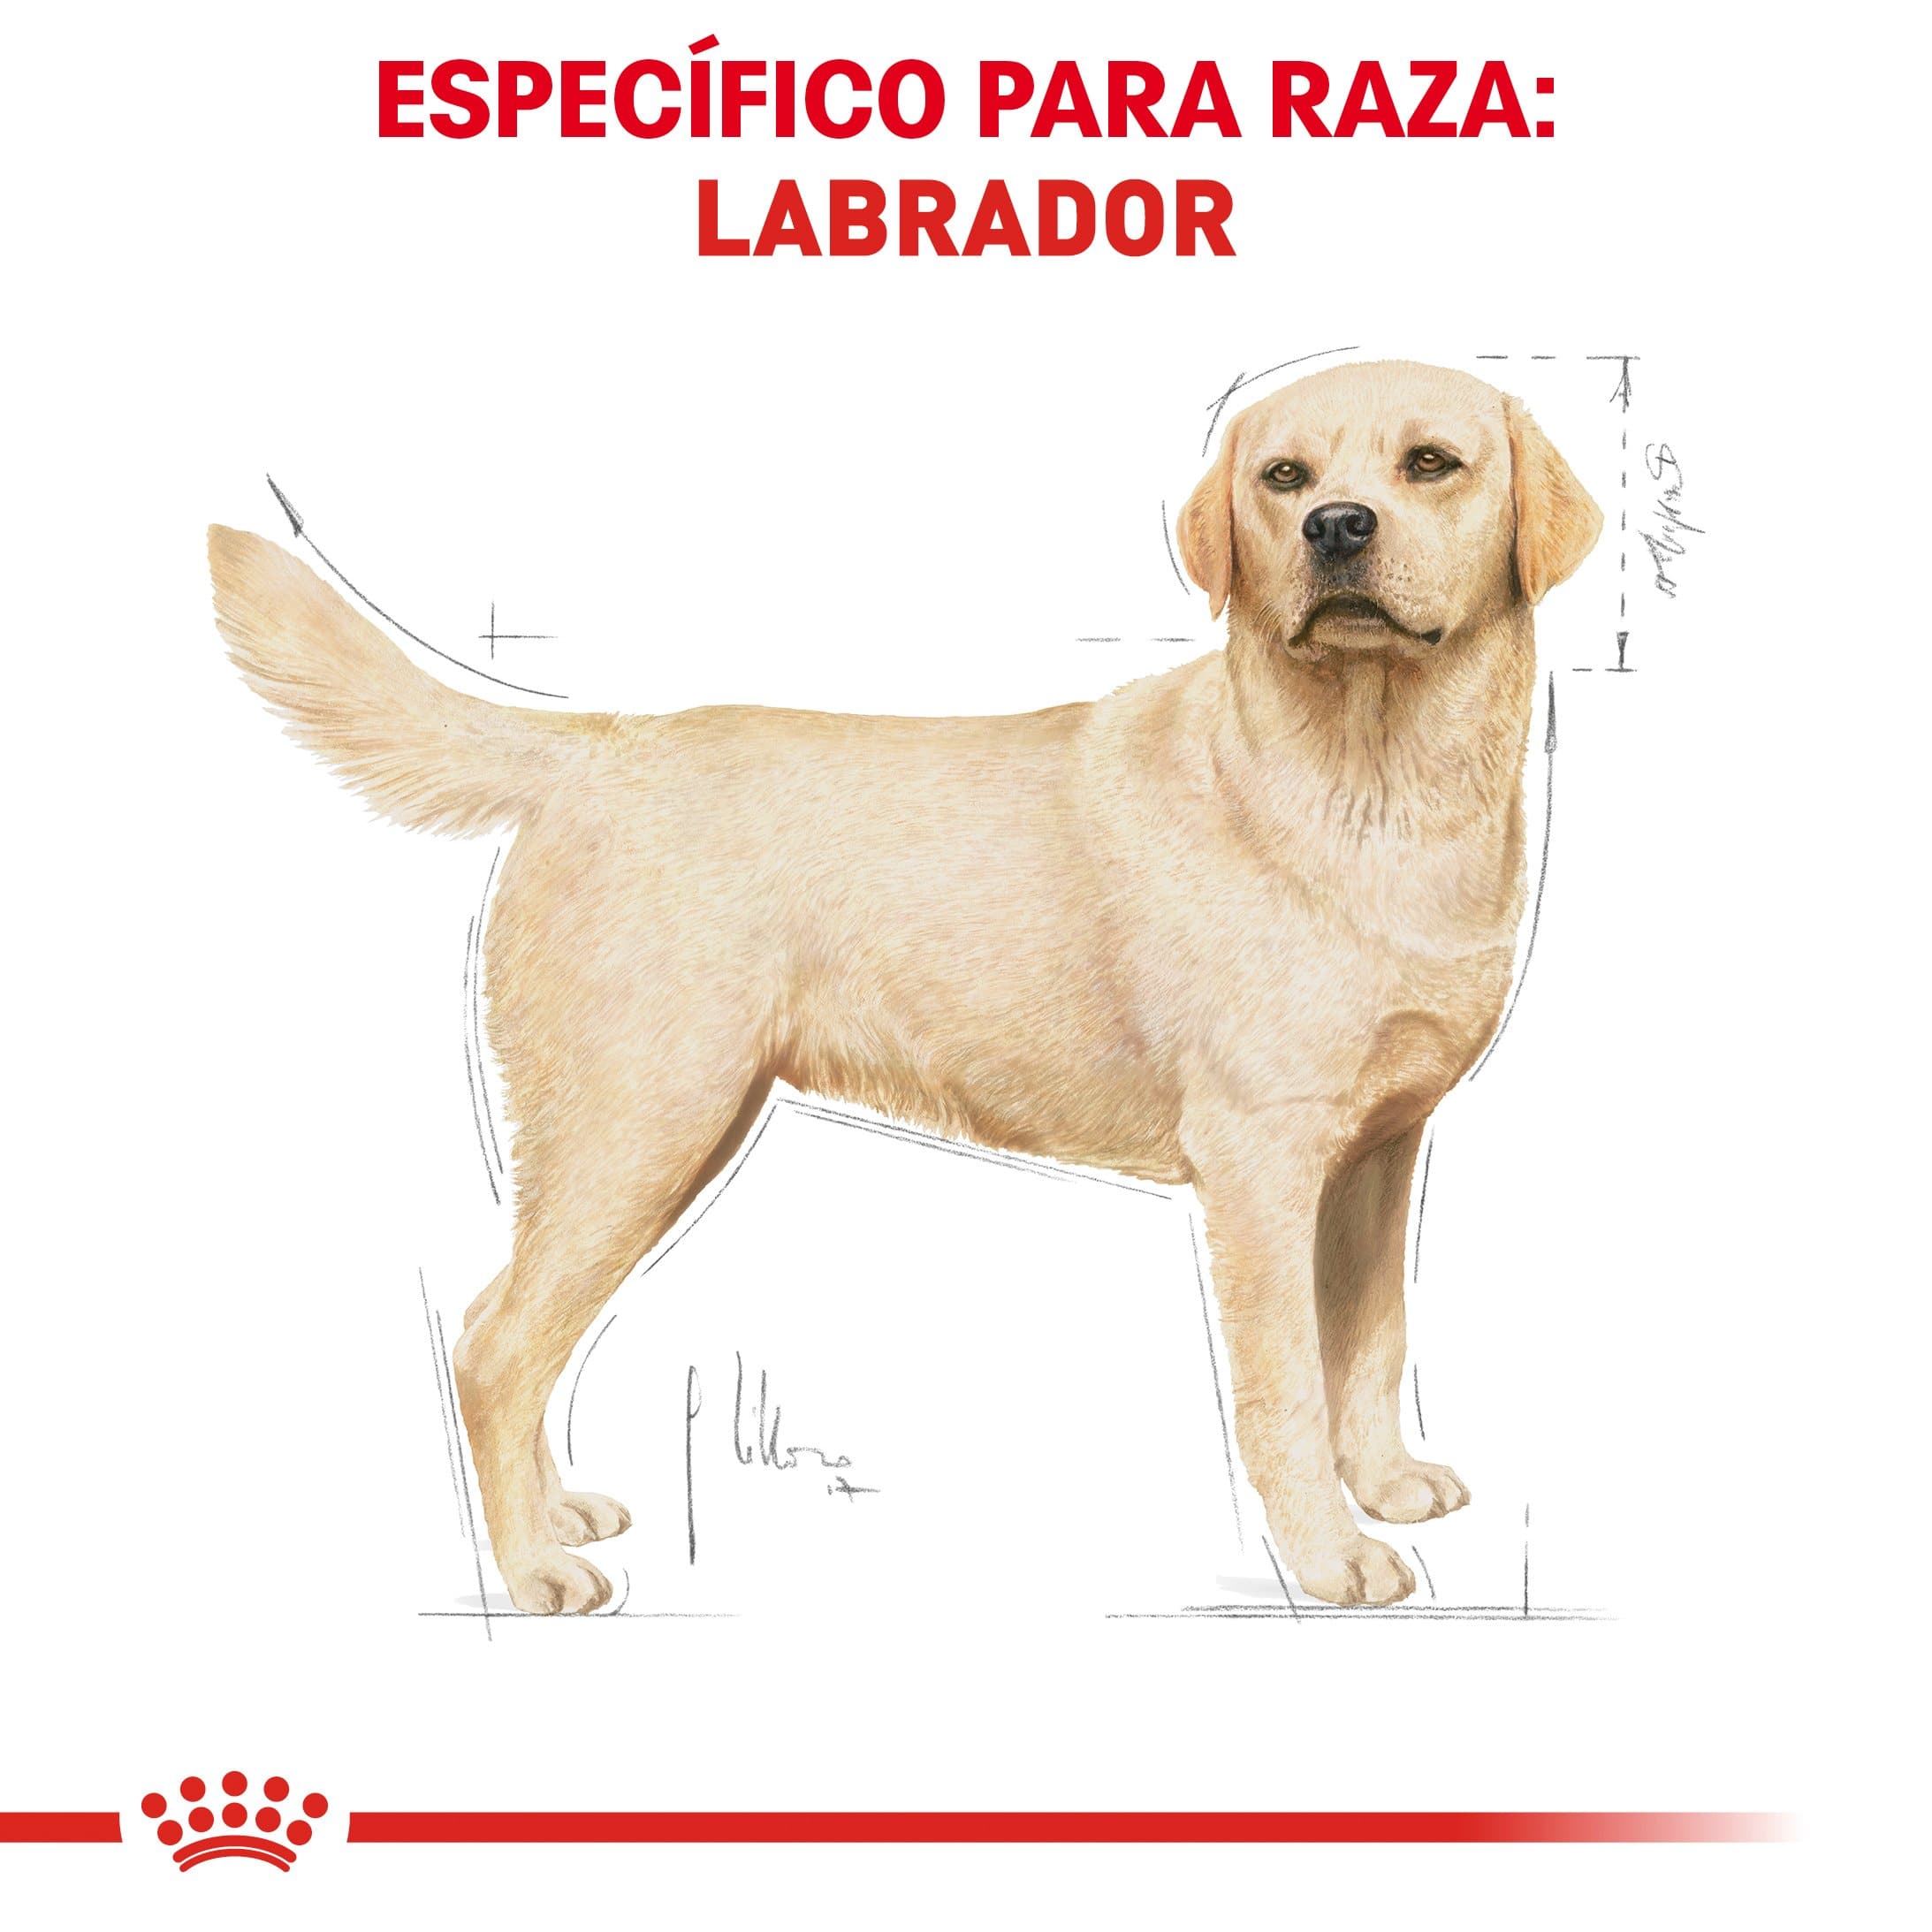 Royal Canin Labrador Retriever Adulto 13.63 kg - Alimento Seco Labrador Adulto